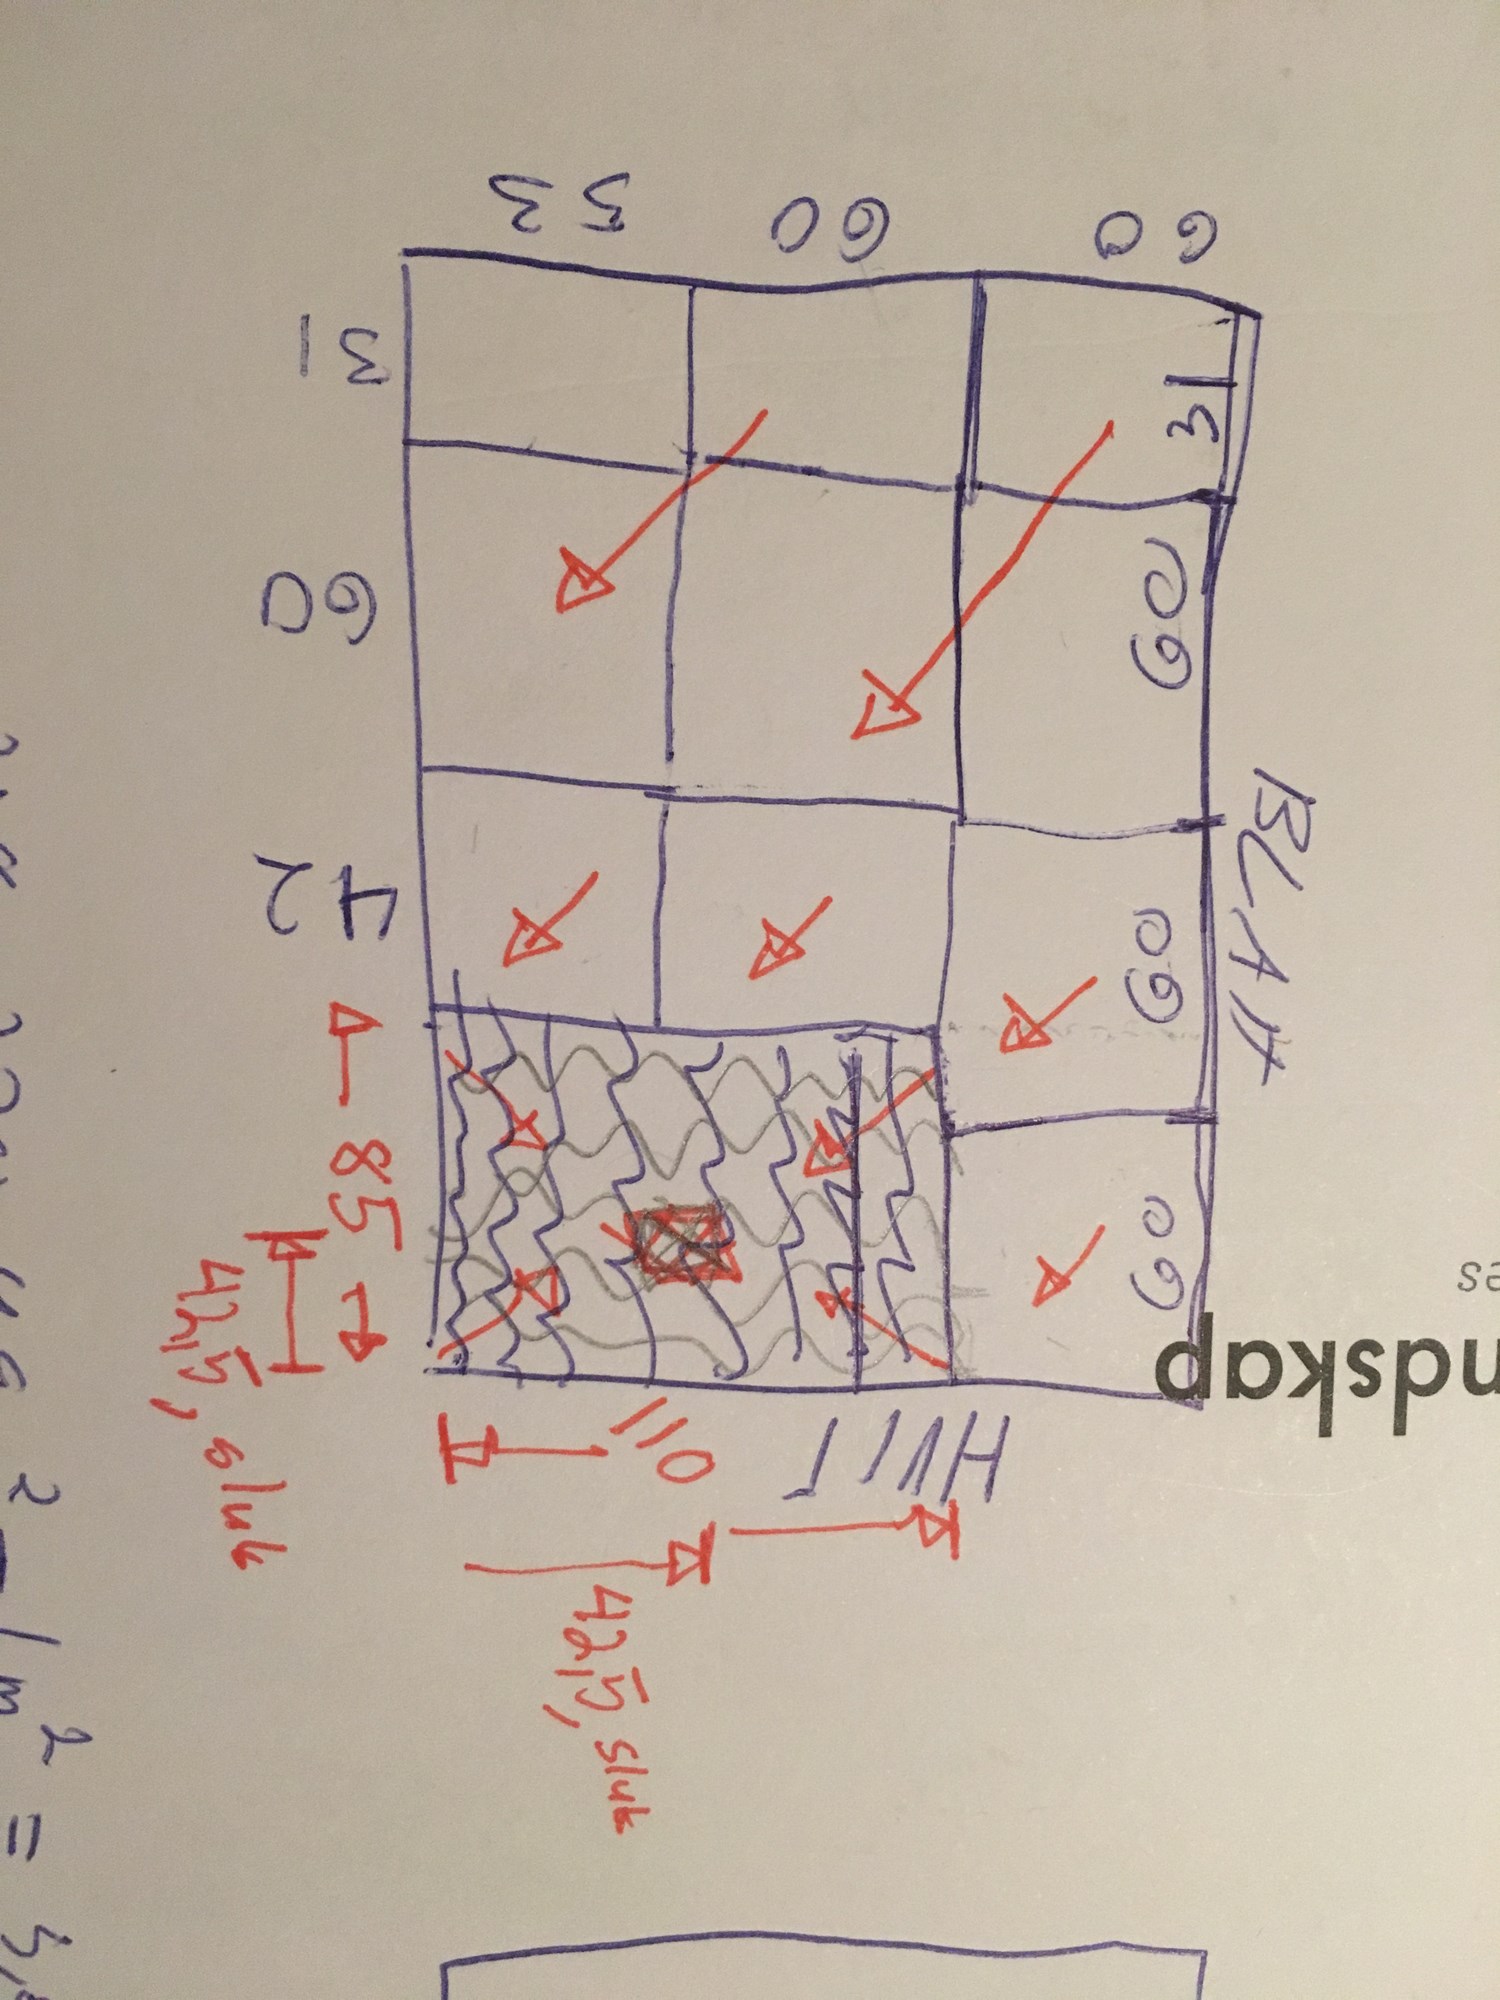 Hvordan beregne høyde på diagonalt fall til sluk med storformat fliser? - image.jpg - SjurVik